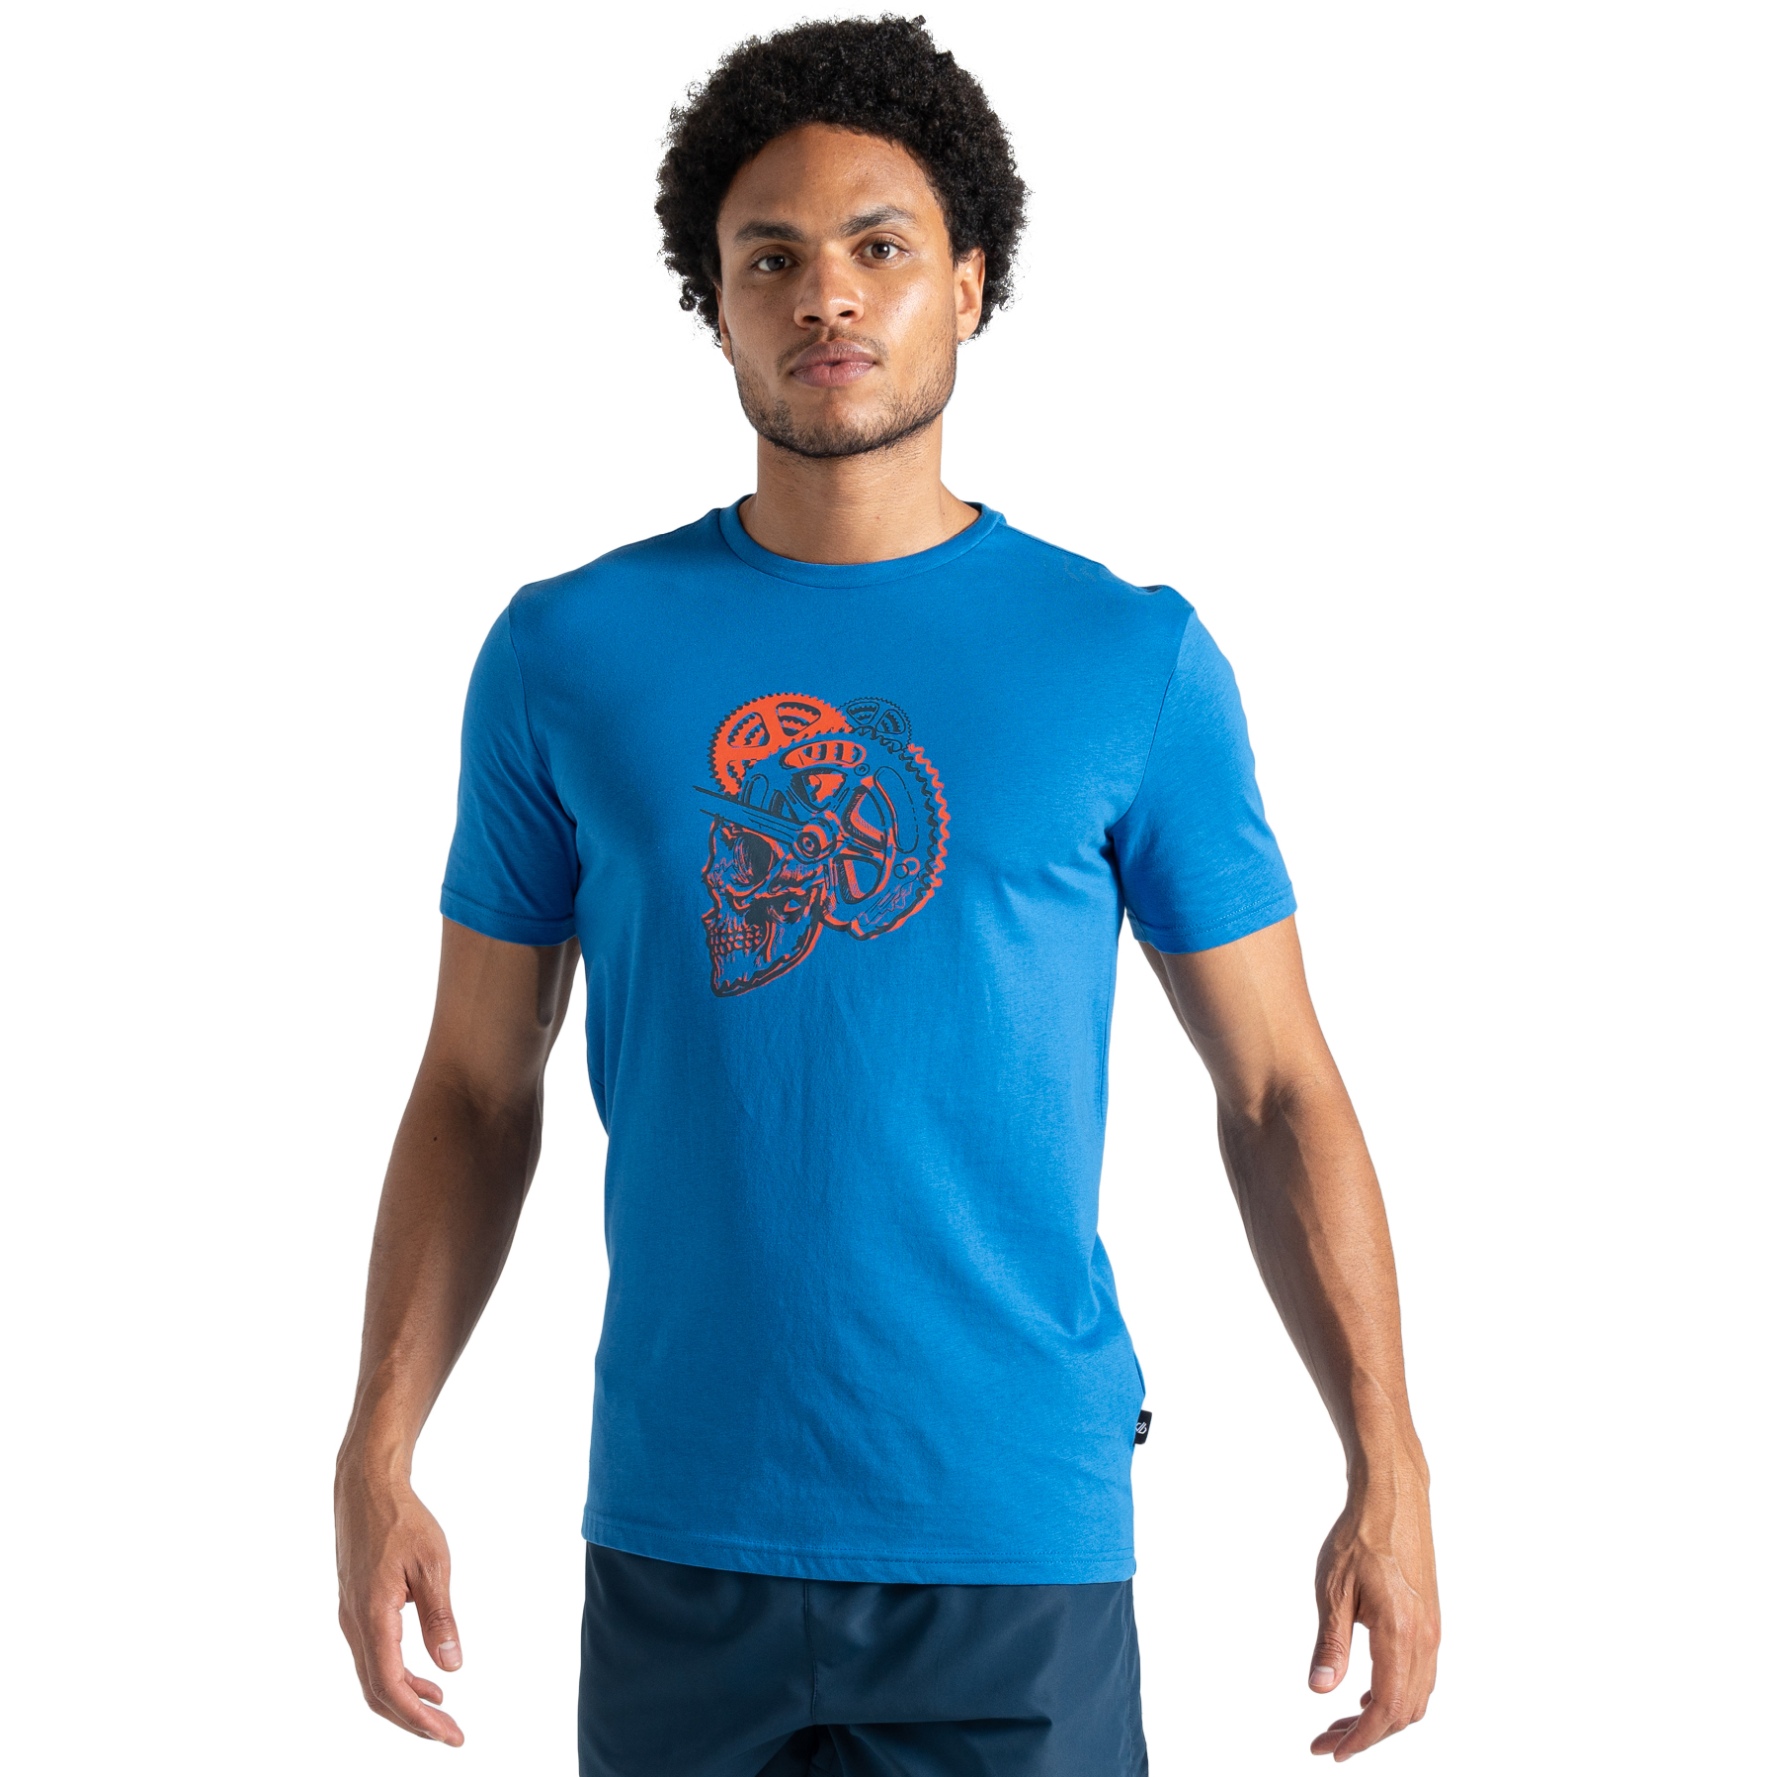 Produktbild von Dare 2b Movement II T-Shirt Herren - 4PA Athletic Blue